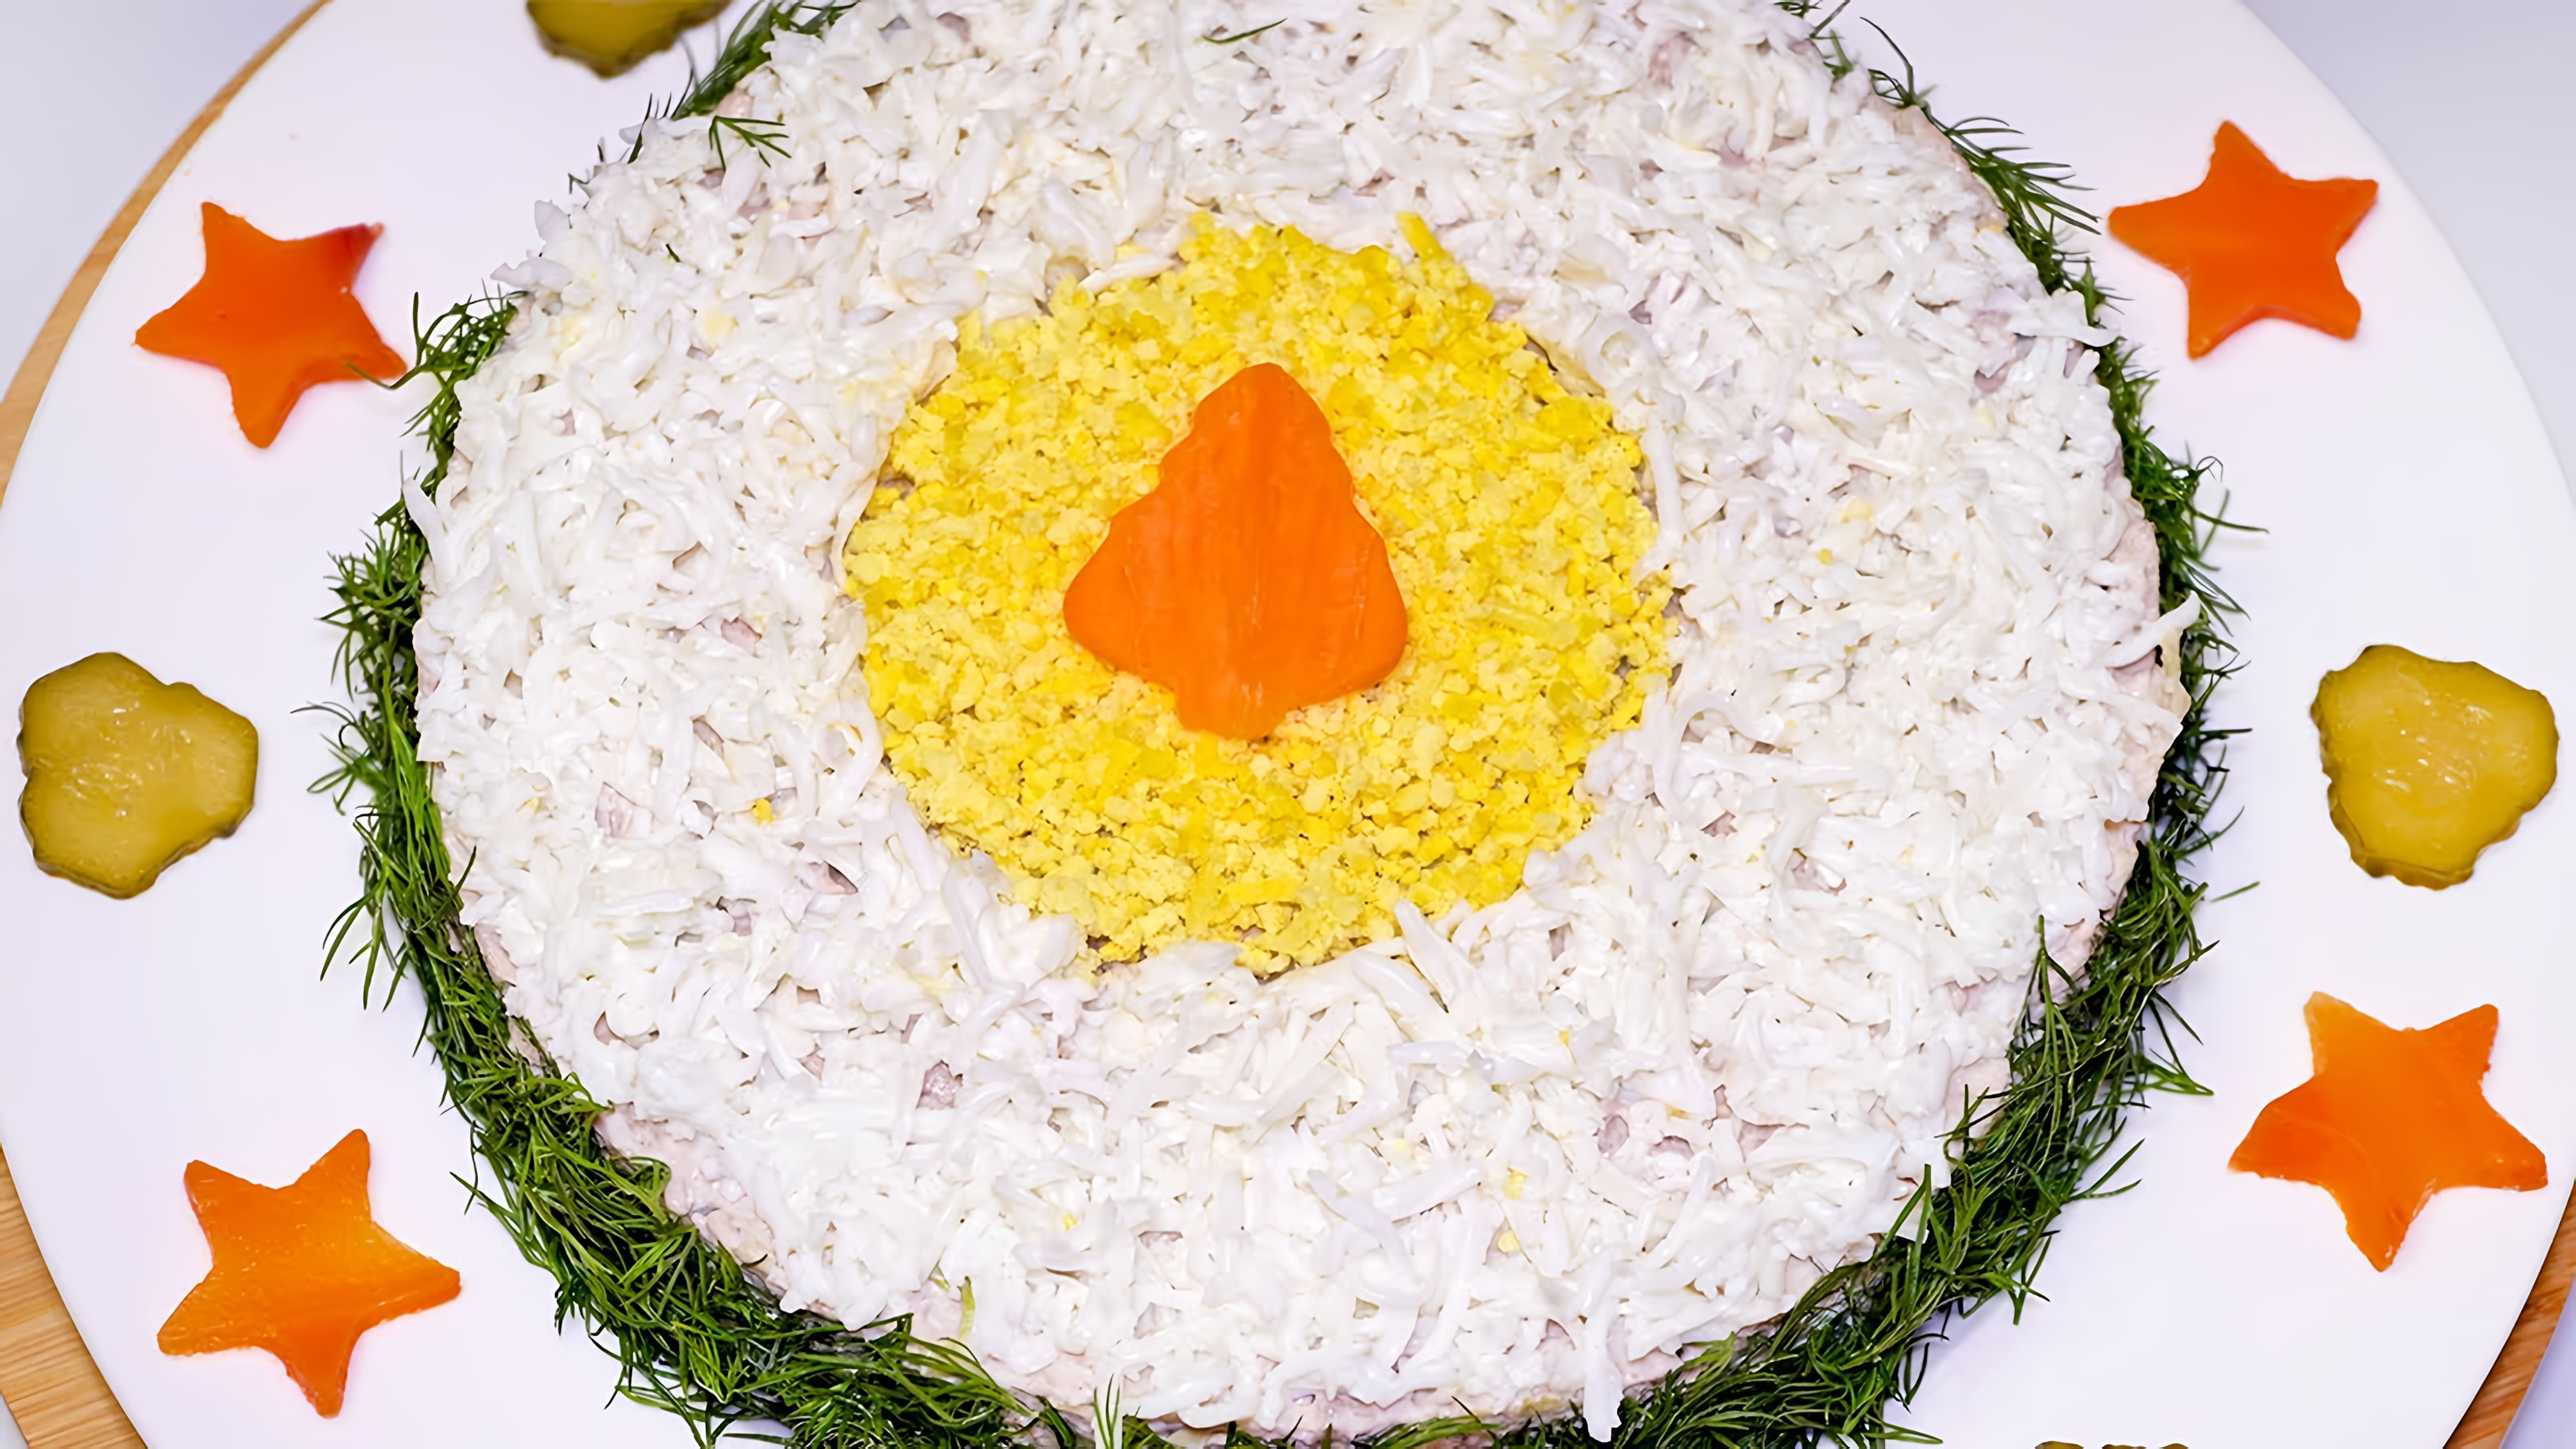 В этом видео демонстрируется рецепт праздничного салата с языком, солеными огурчиками и другими ингредиентами